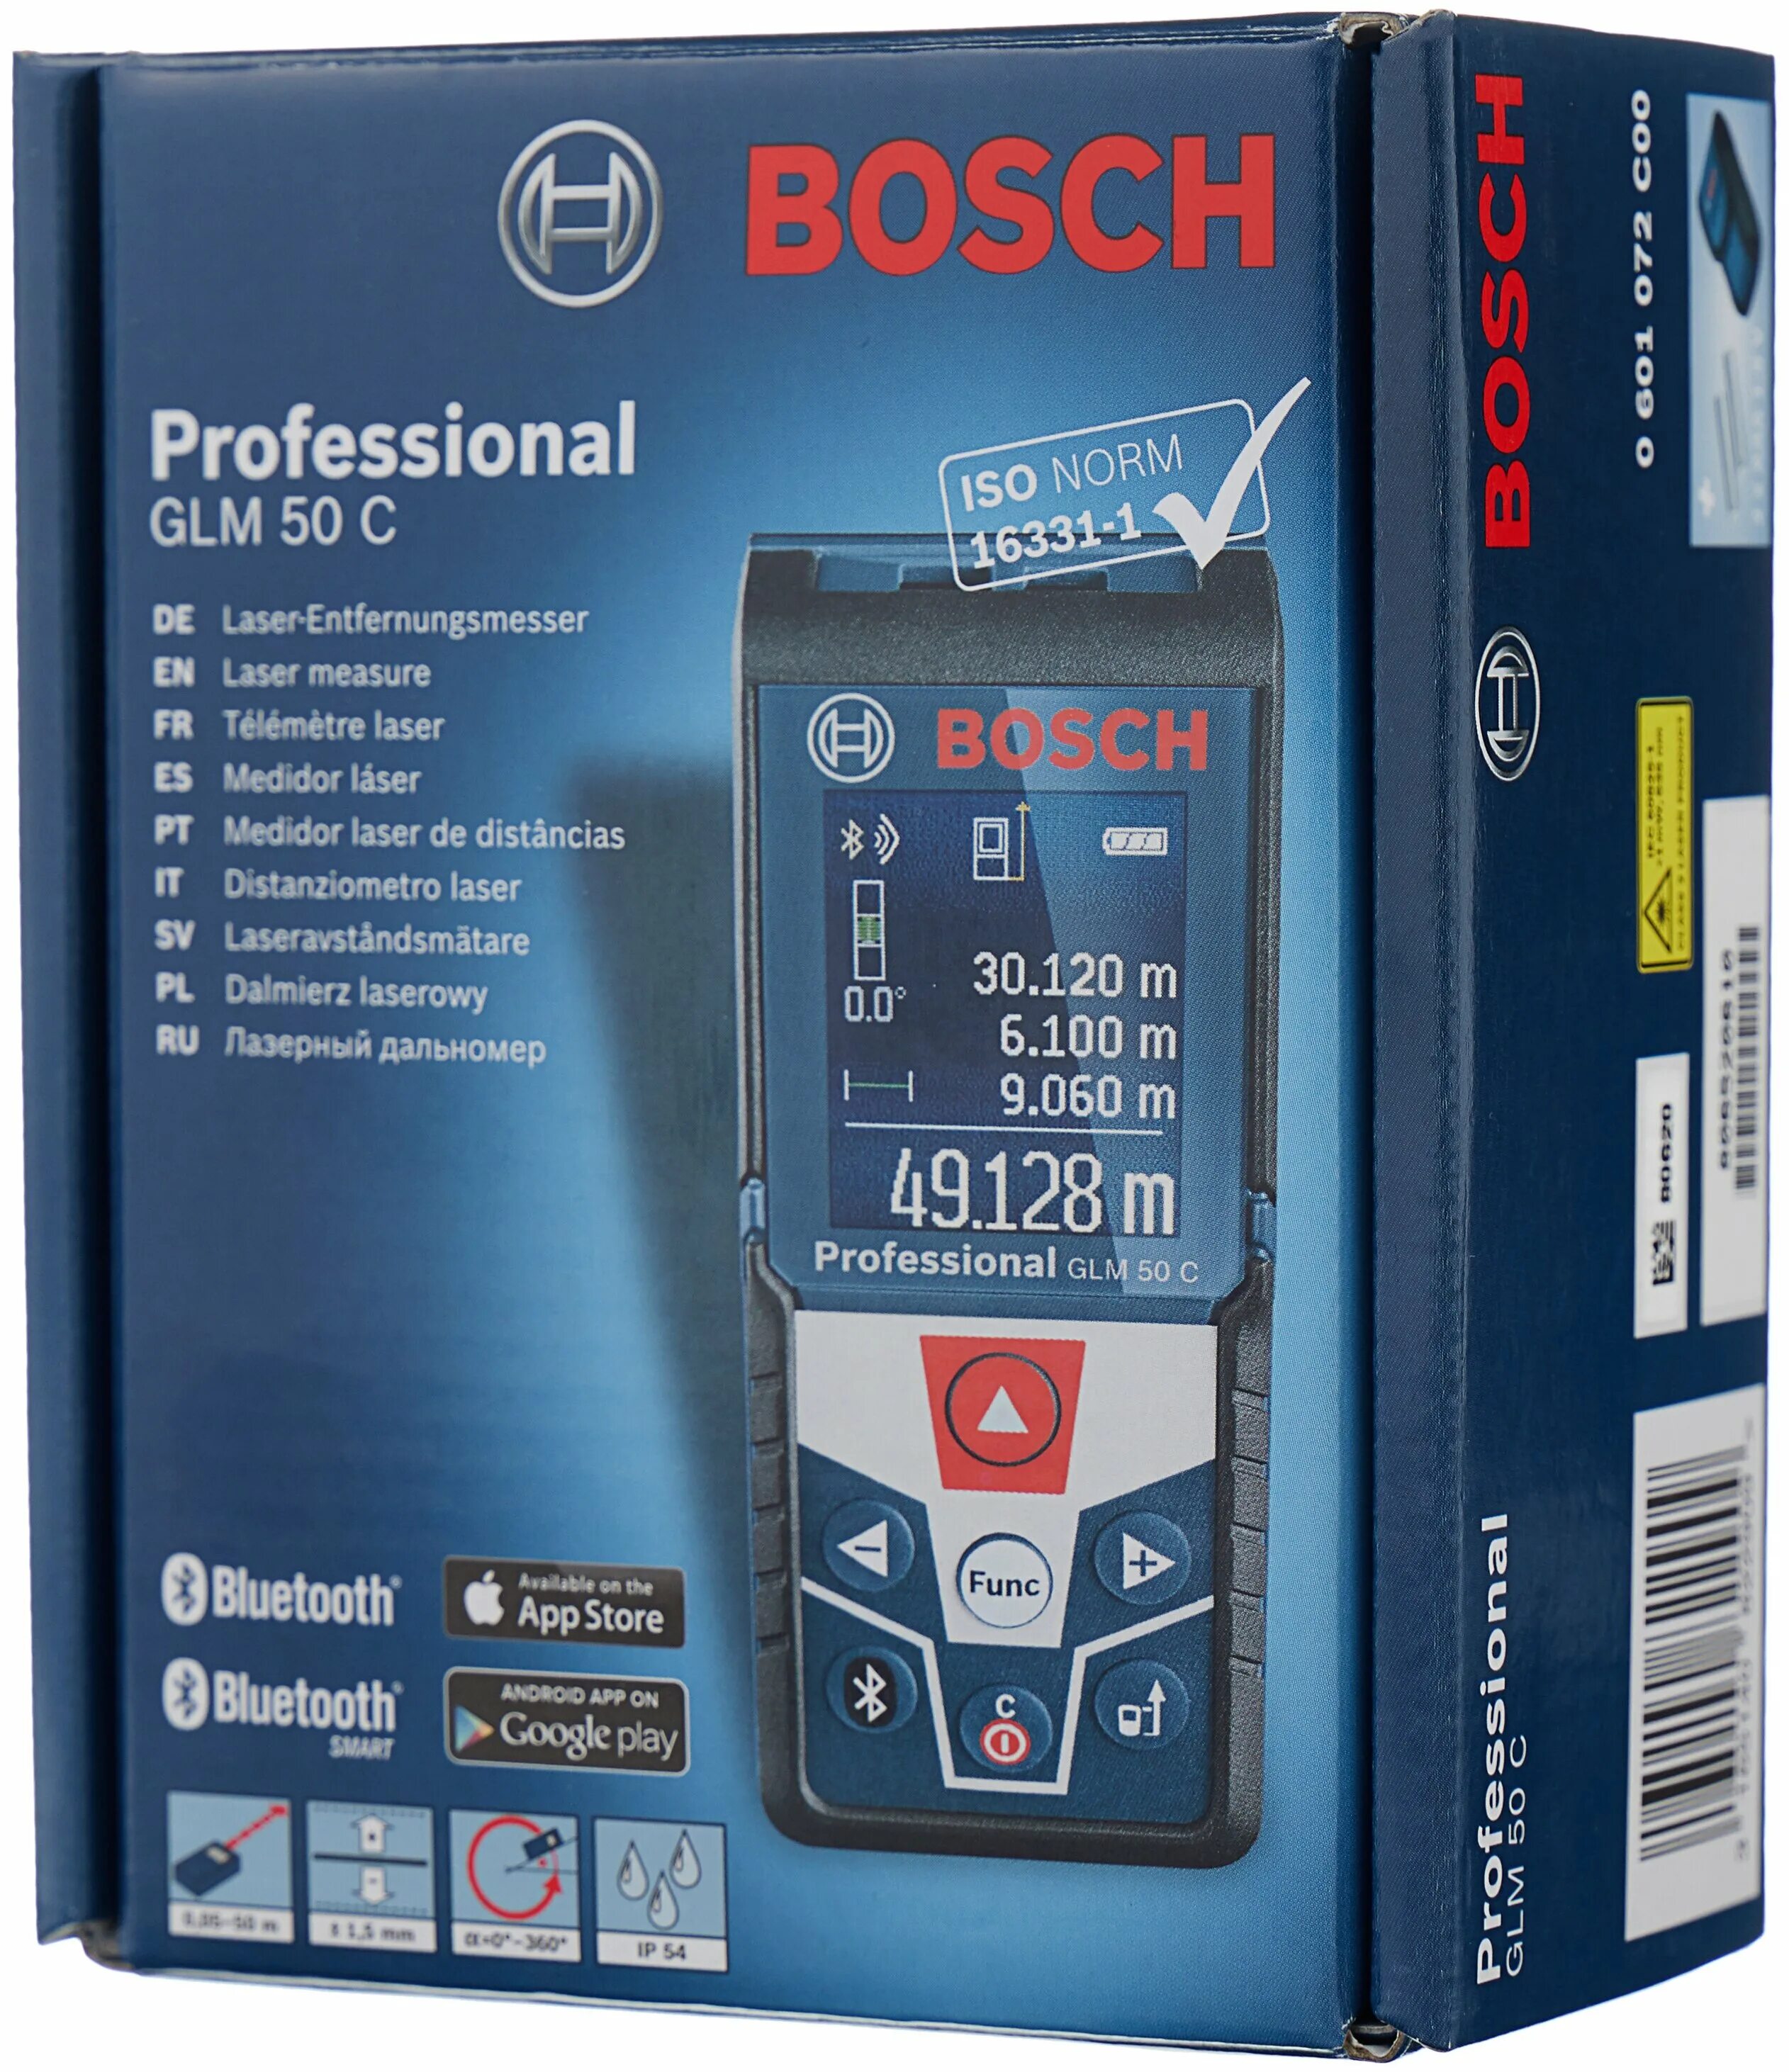 Glm 50 c. Bosch GLM 50 C professional. Лазерный дальномер Bosch GLM 50 C professional 50 м. Лазерный дальномер Bosch GLM 50с. Дальномер лазерный бош GLM 50.